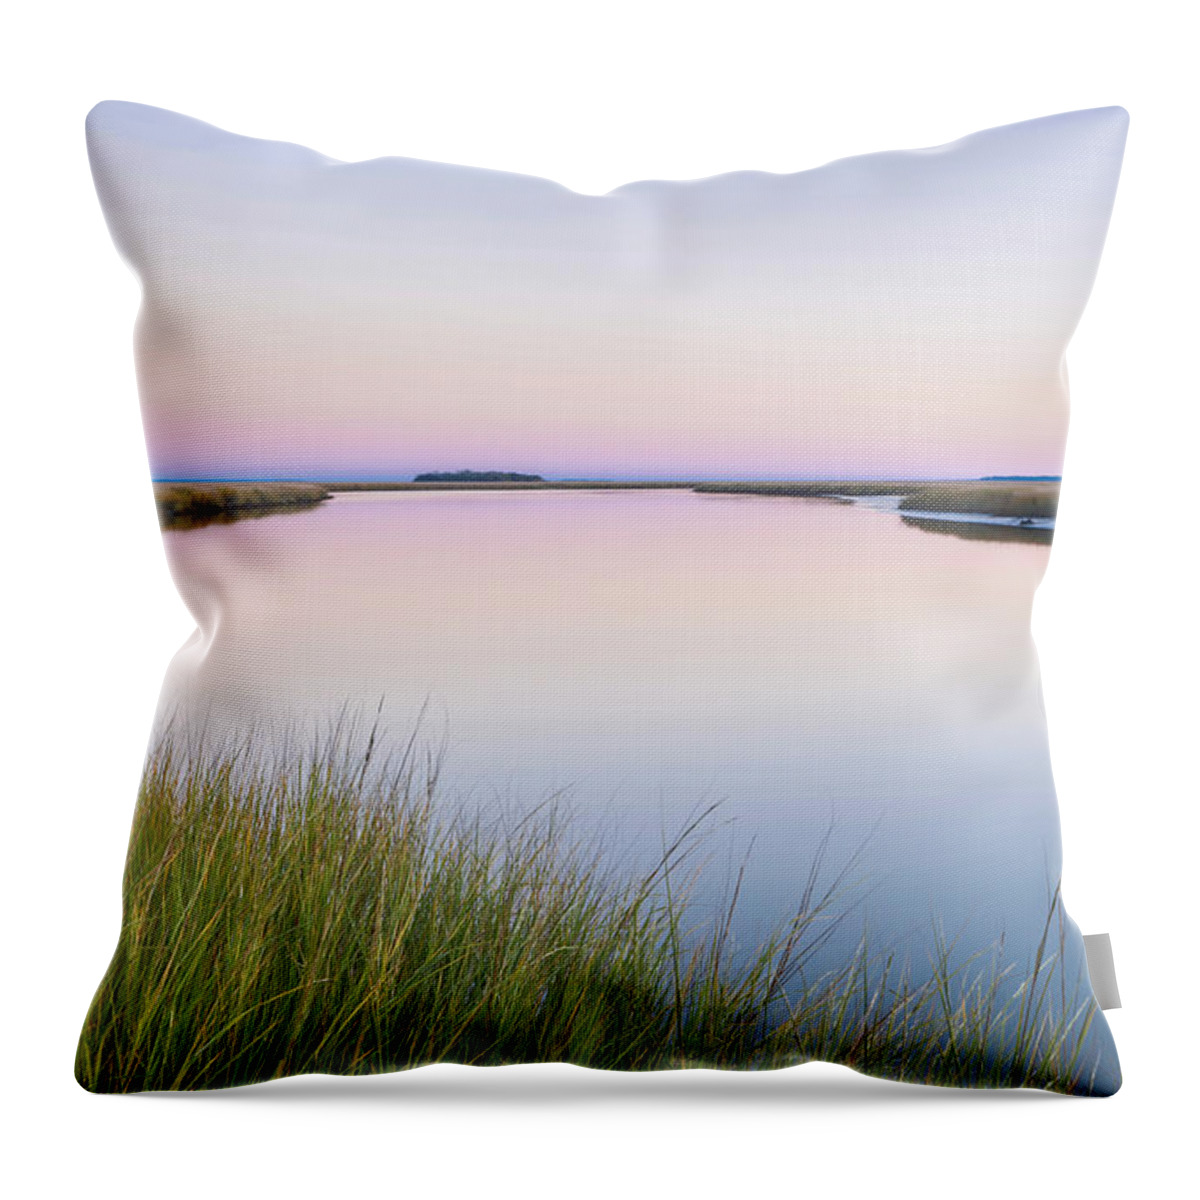 Fort Mcallister State Park Throw Pillow featuring the photograph Ogeechee River Sunset by Jurgen Lorenzen